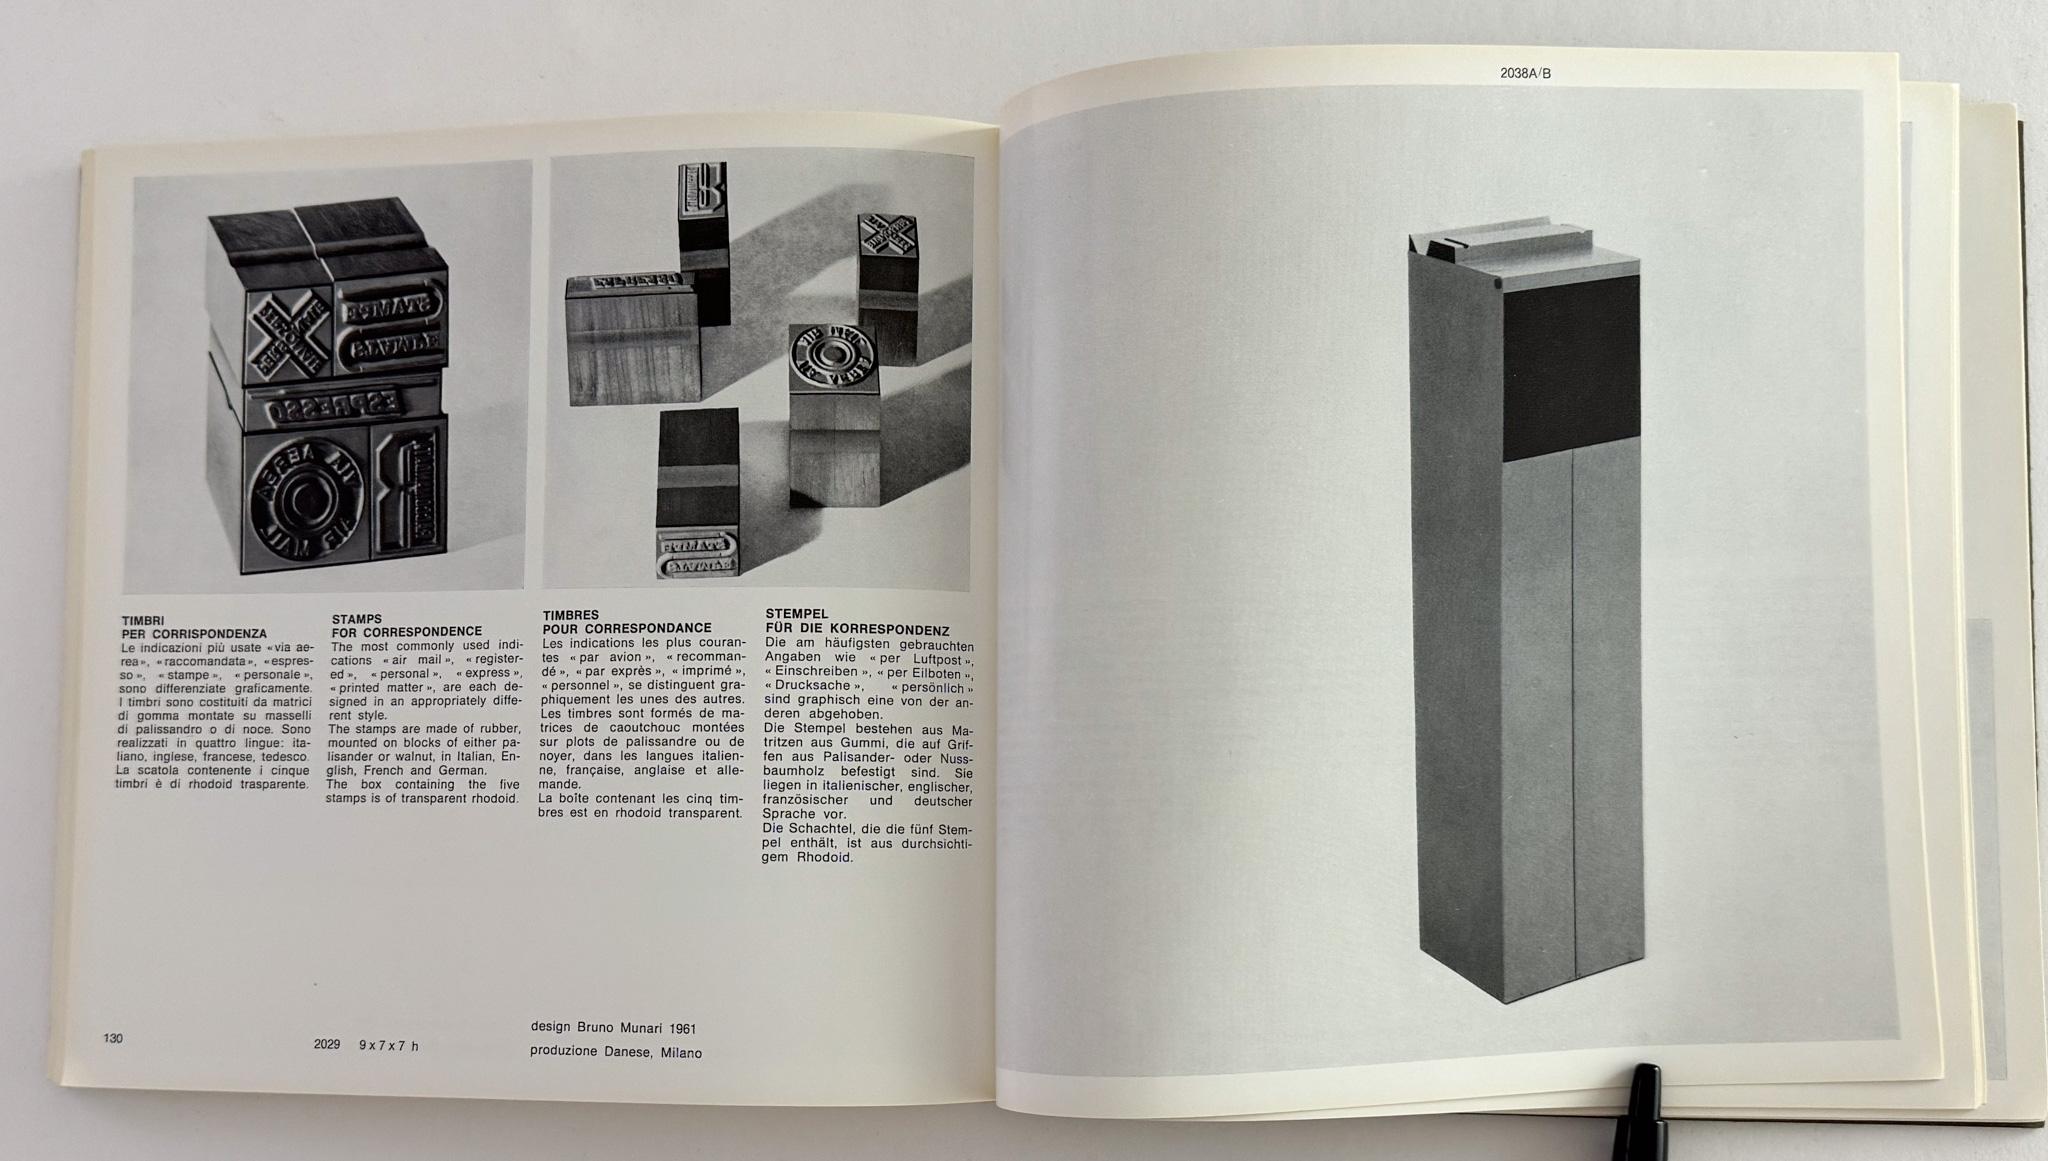 Paper Danese Milano 1957-1971: Produzione